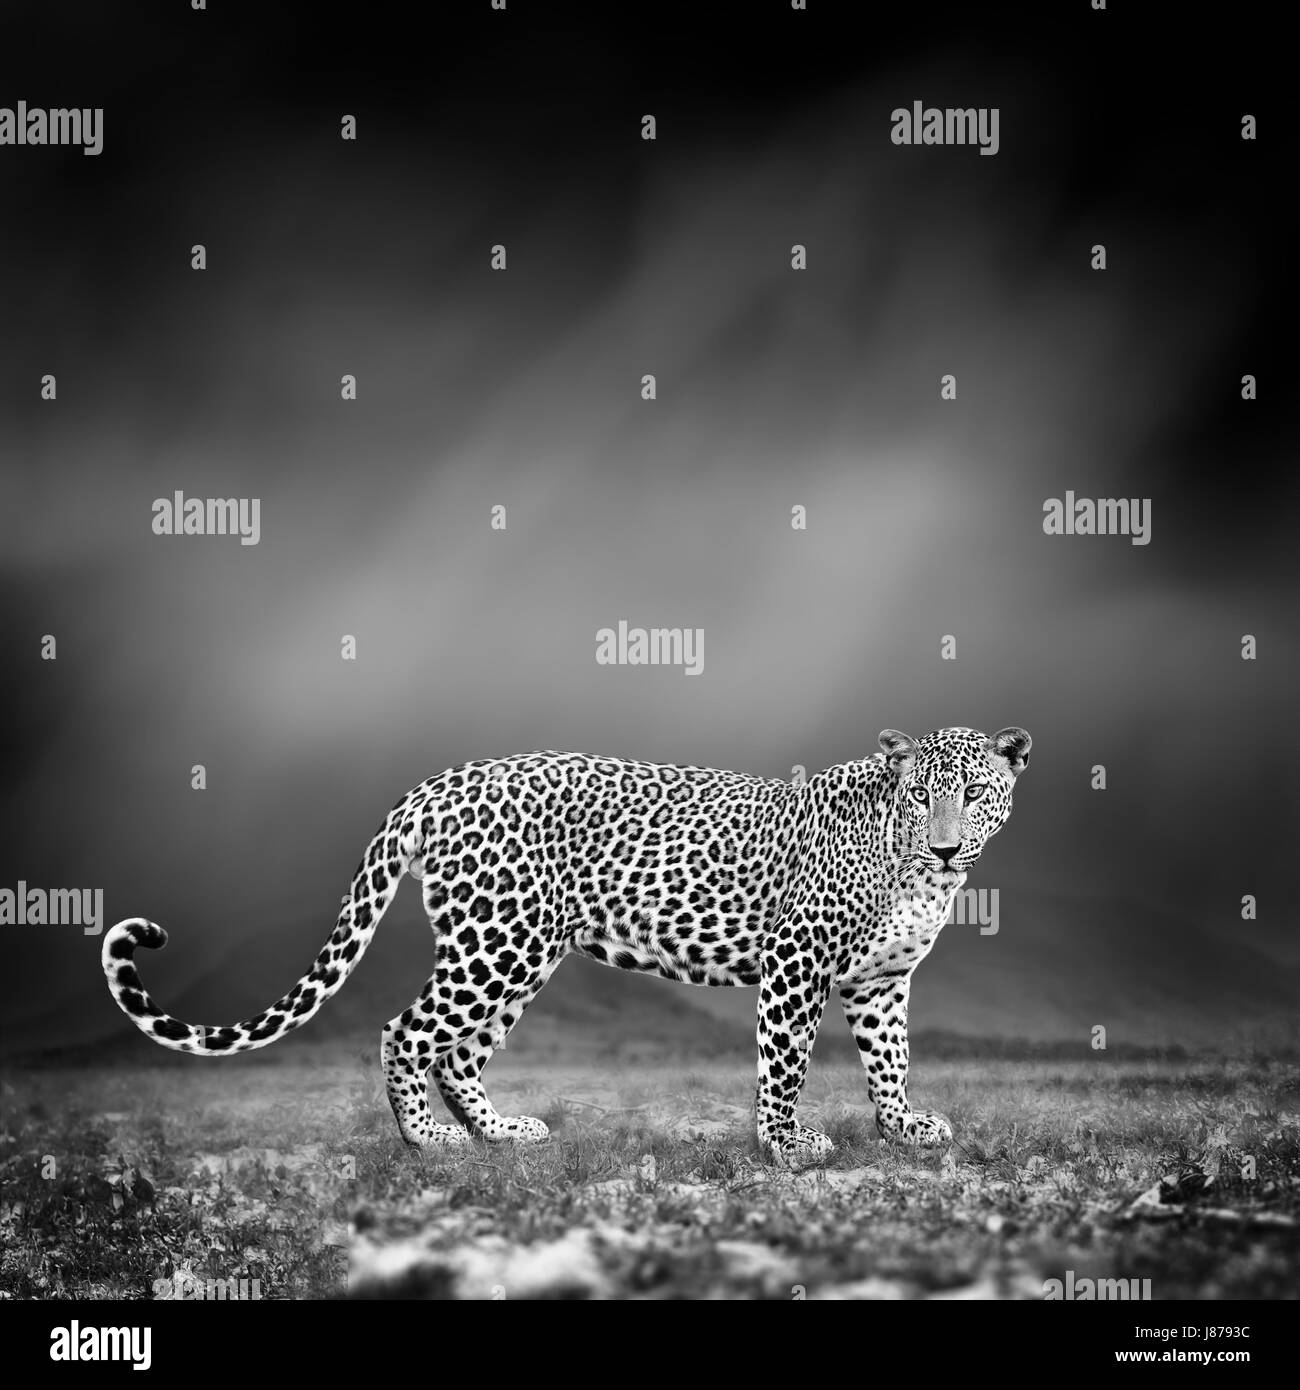 Dramatische Schwarz / Weiß Bild eines Leoparden auf schwarzem Hintergrund Stockfoto